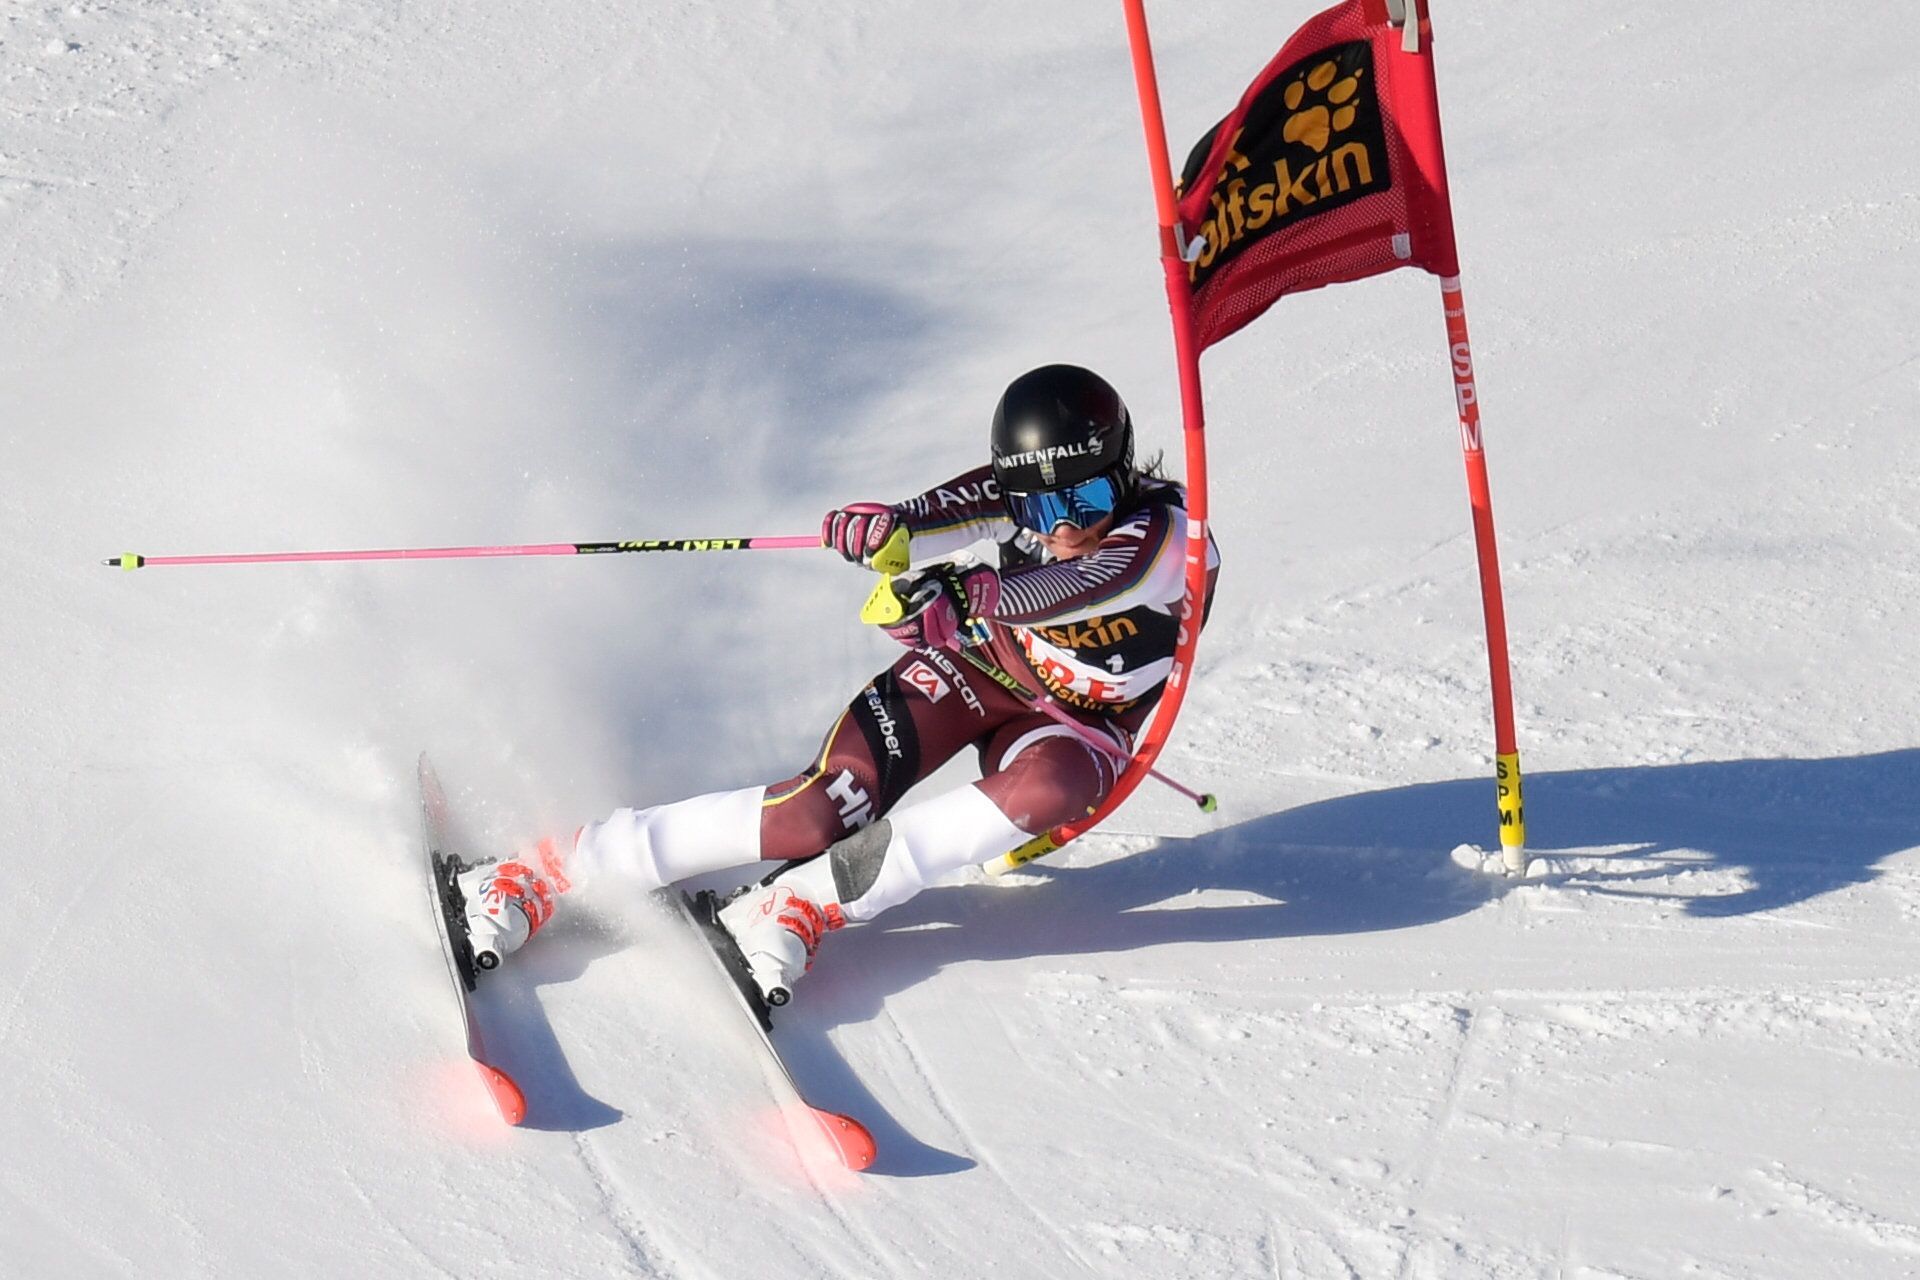 Finále SP ve sjezdovém lyžování, závod družstev: Frida Hansdotterová